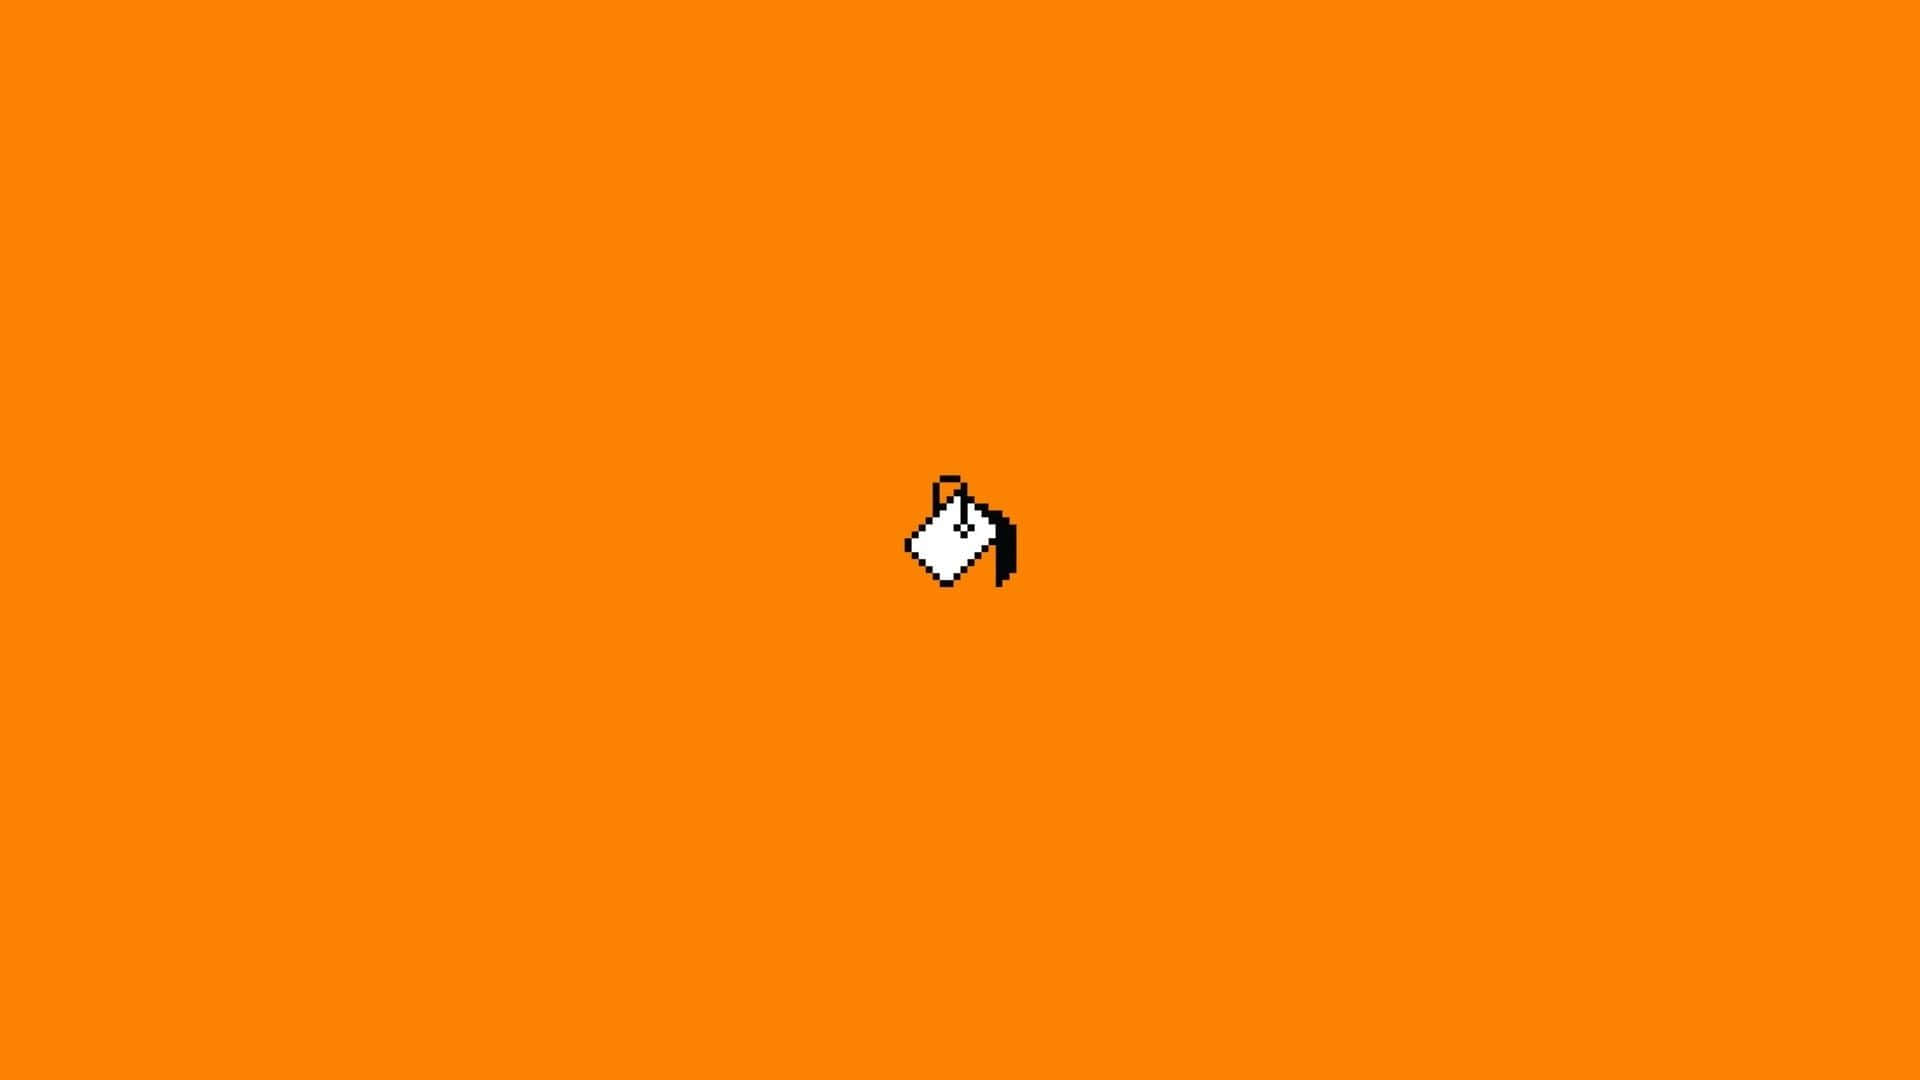 Mspaint-symbol Auf Orangem Hintergrund